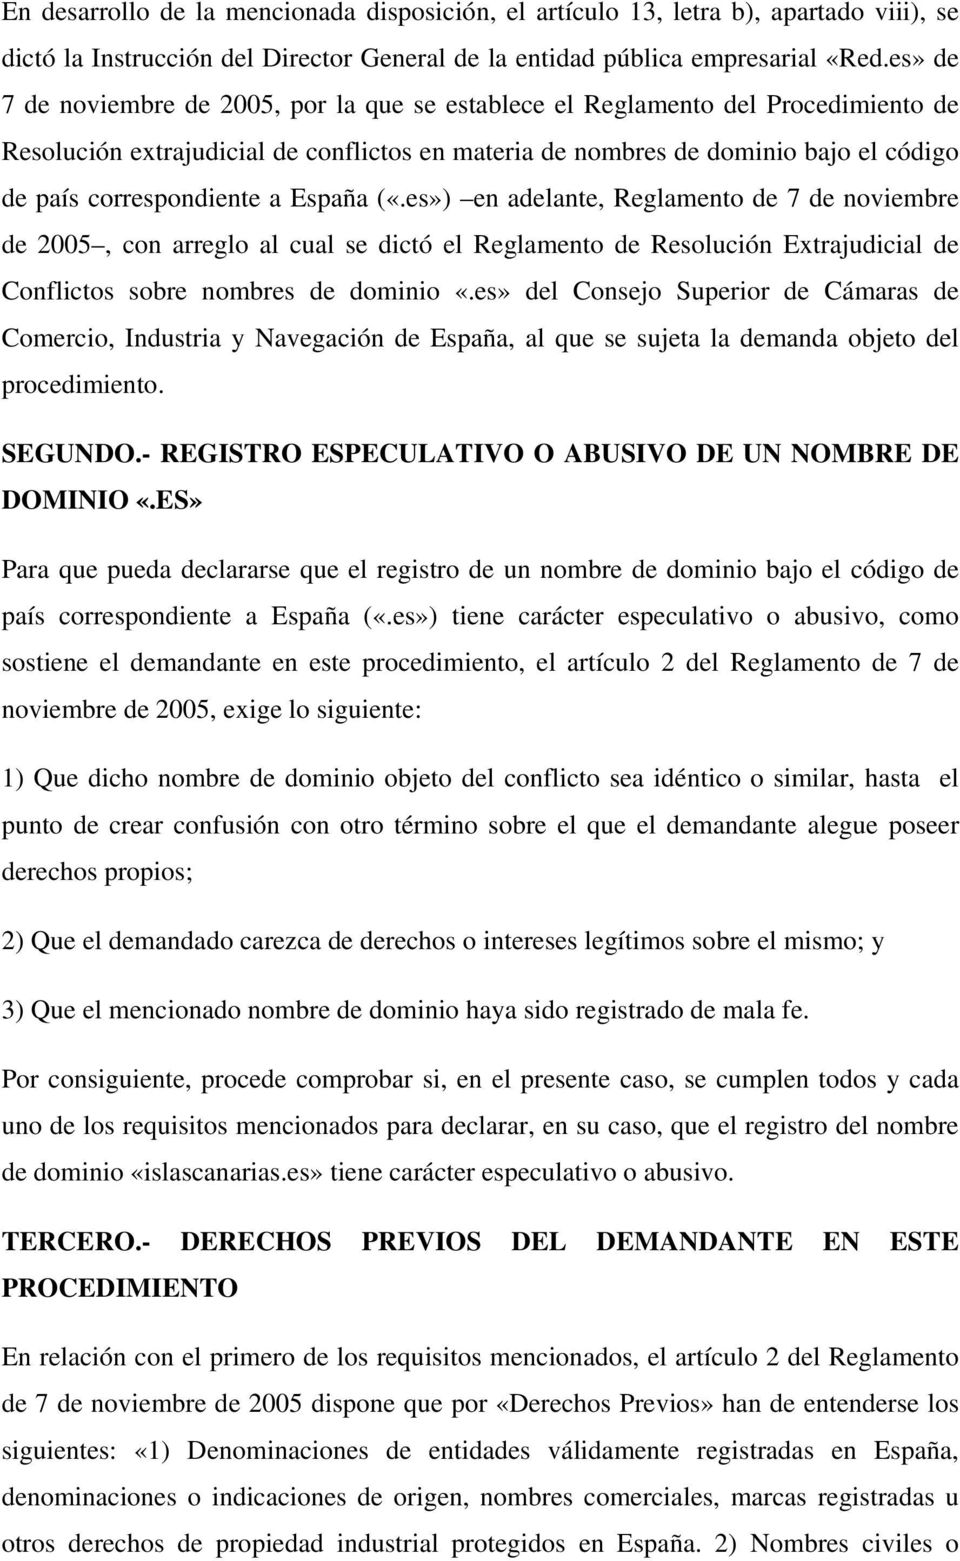 correspondiente a España («.es») en adelante, Reglamento de 7 de noviembre de 2005, con arreglo al cual se dictó el Reglamento de Resolución Extrajudicial de Conflictos sobre nombres de dominio «.